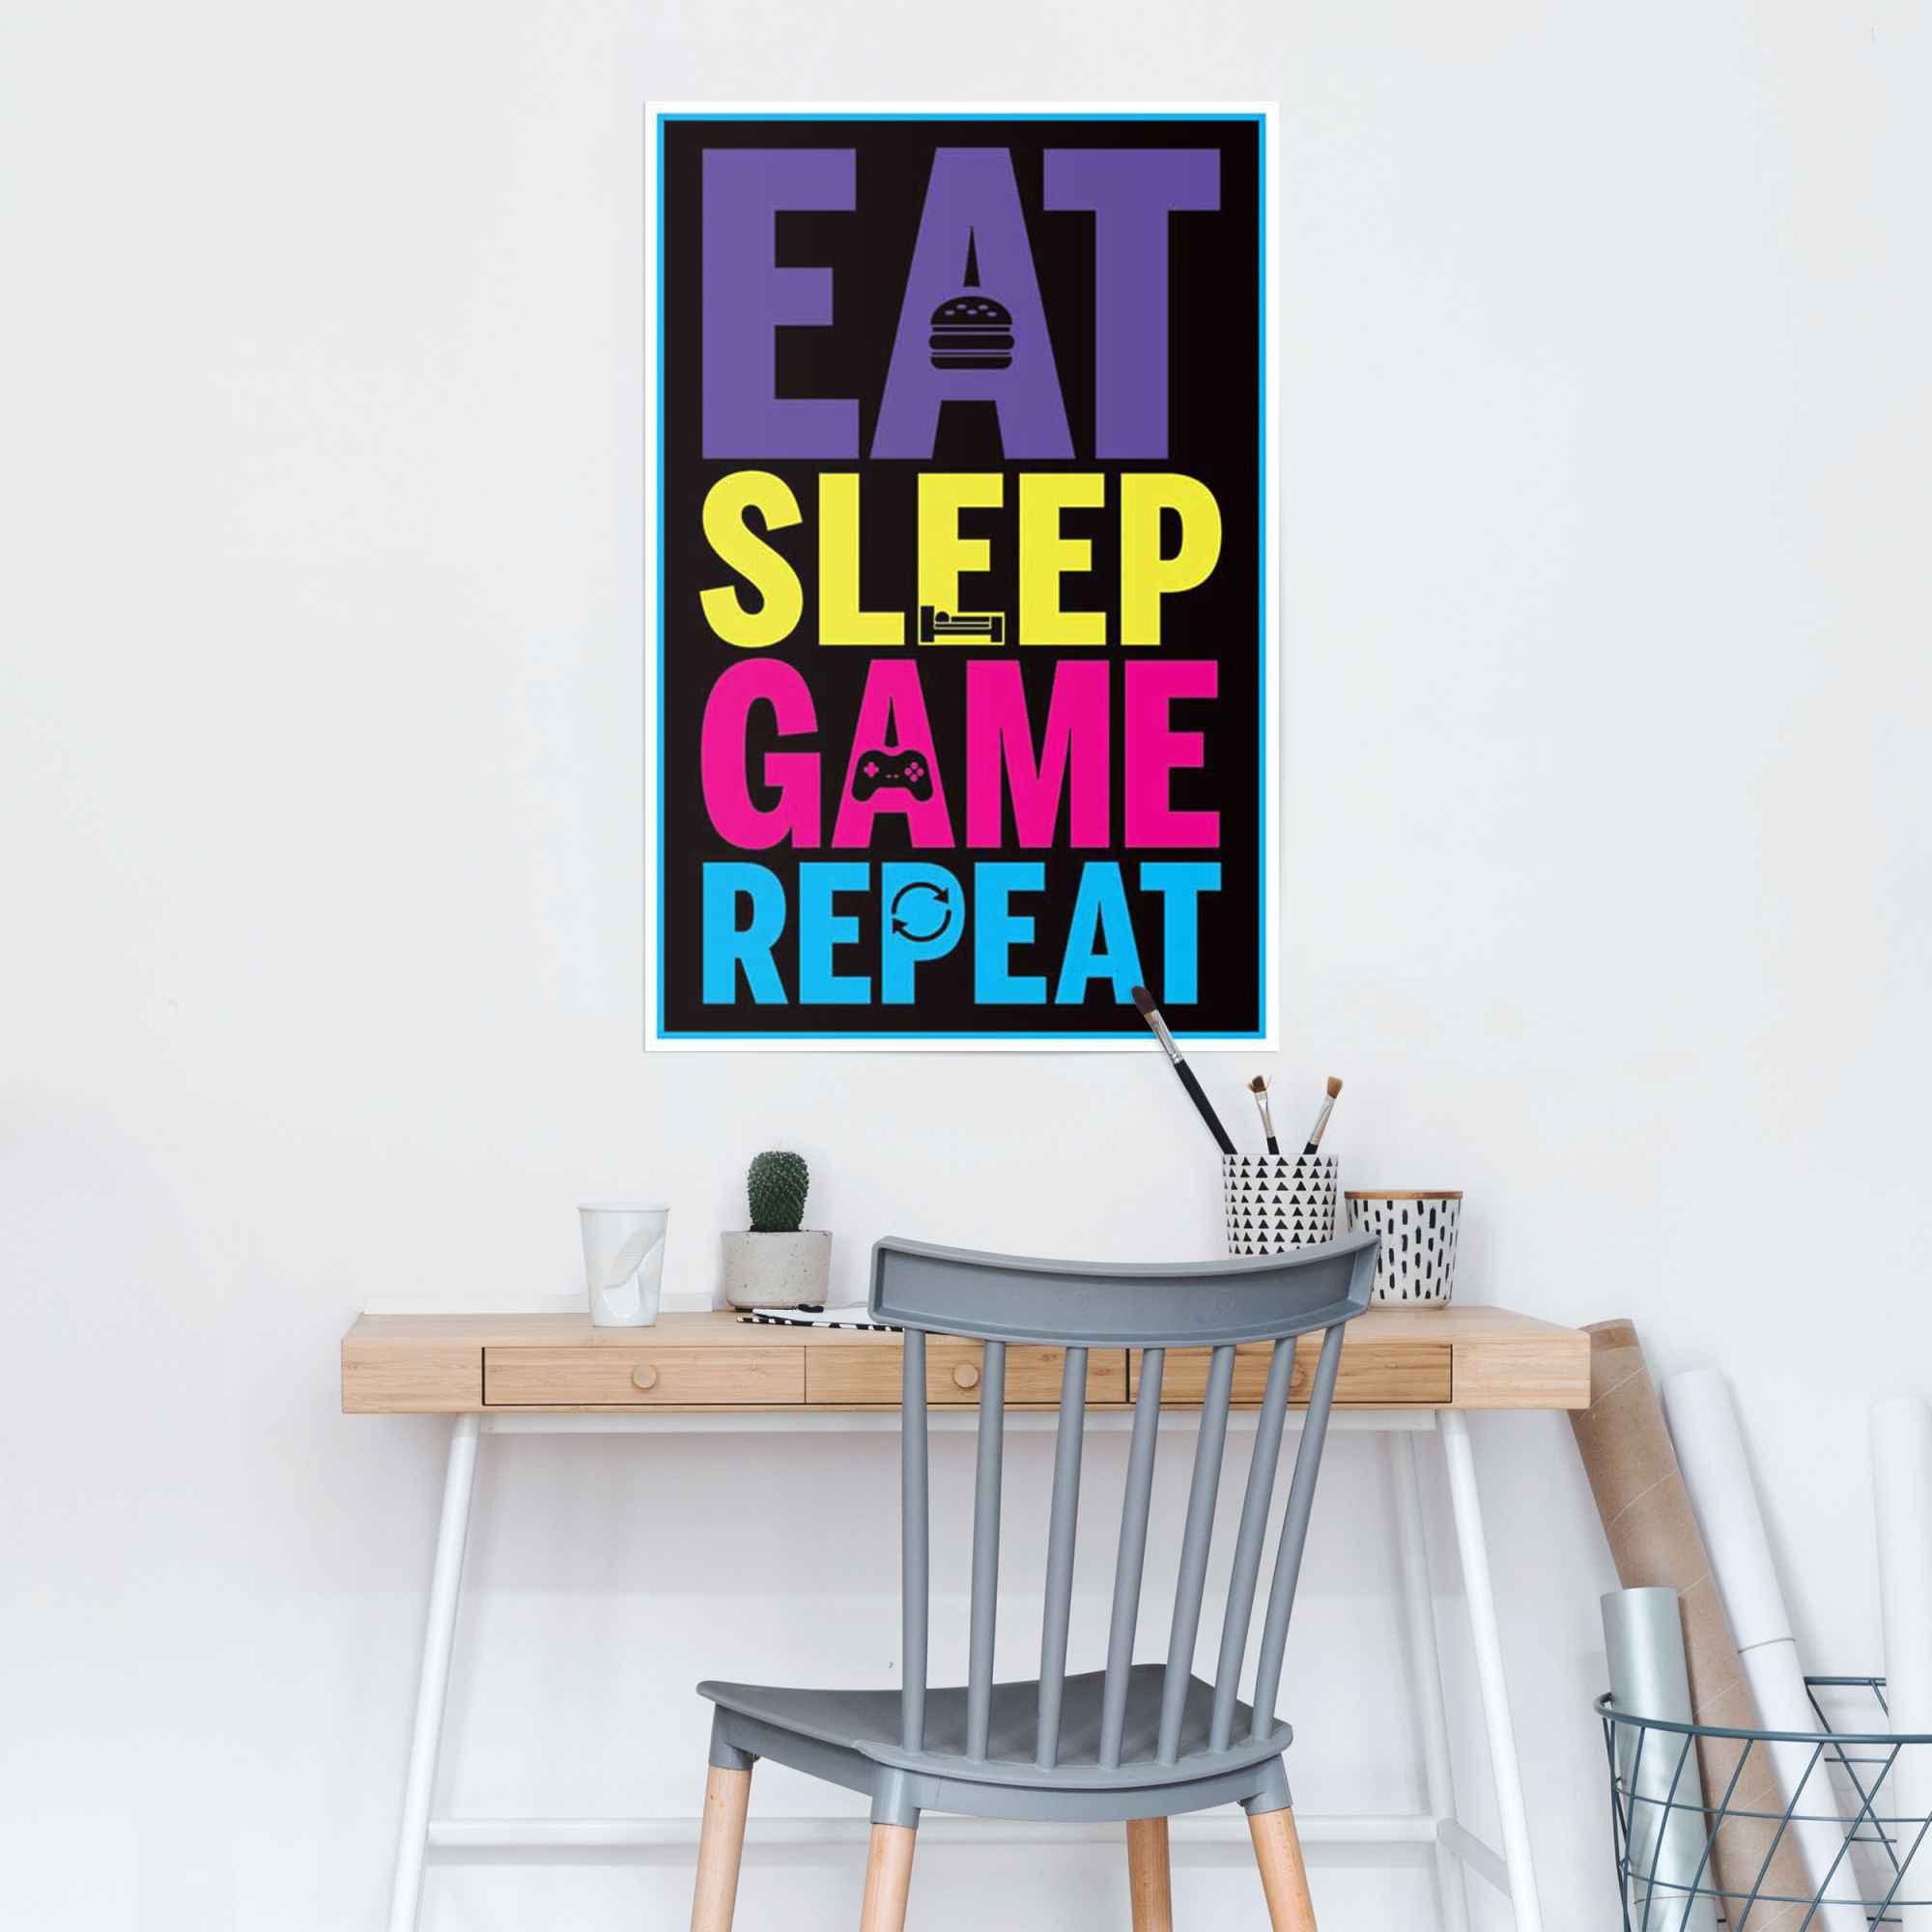 game (1 sleep repeat, St) Eat Reinders! Poster